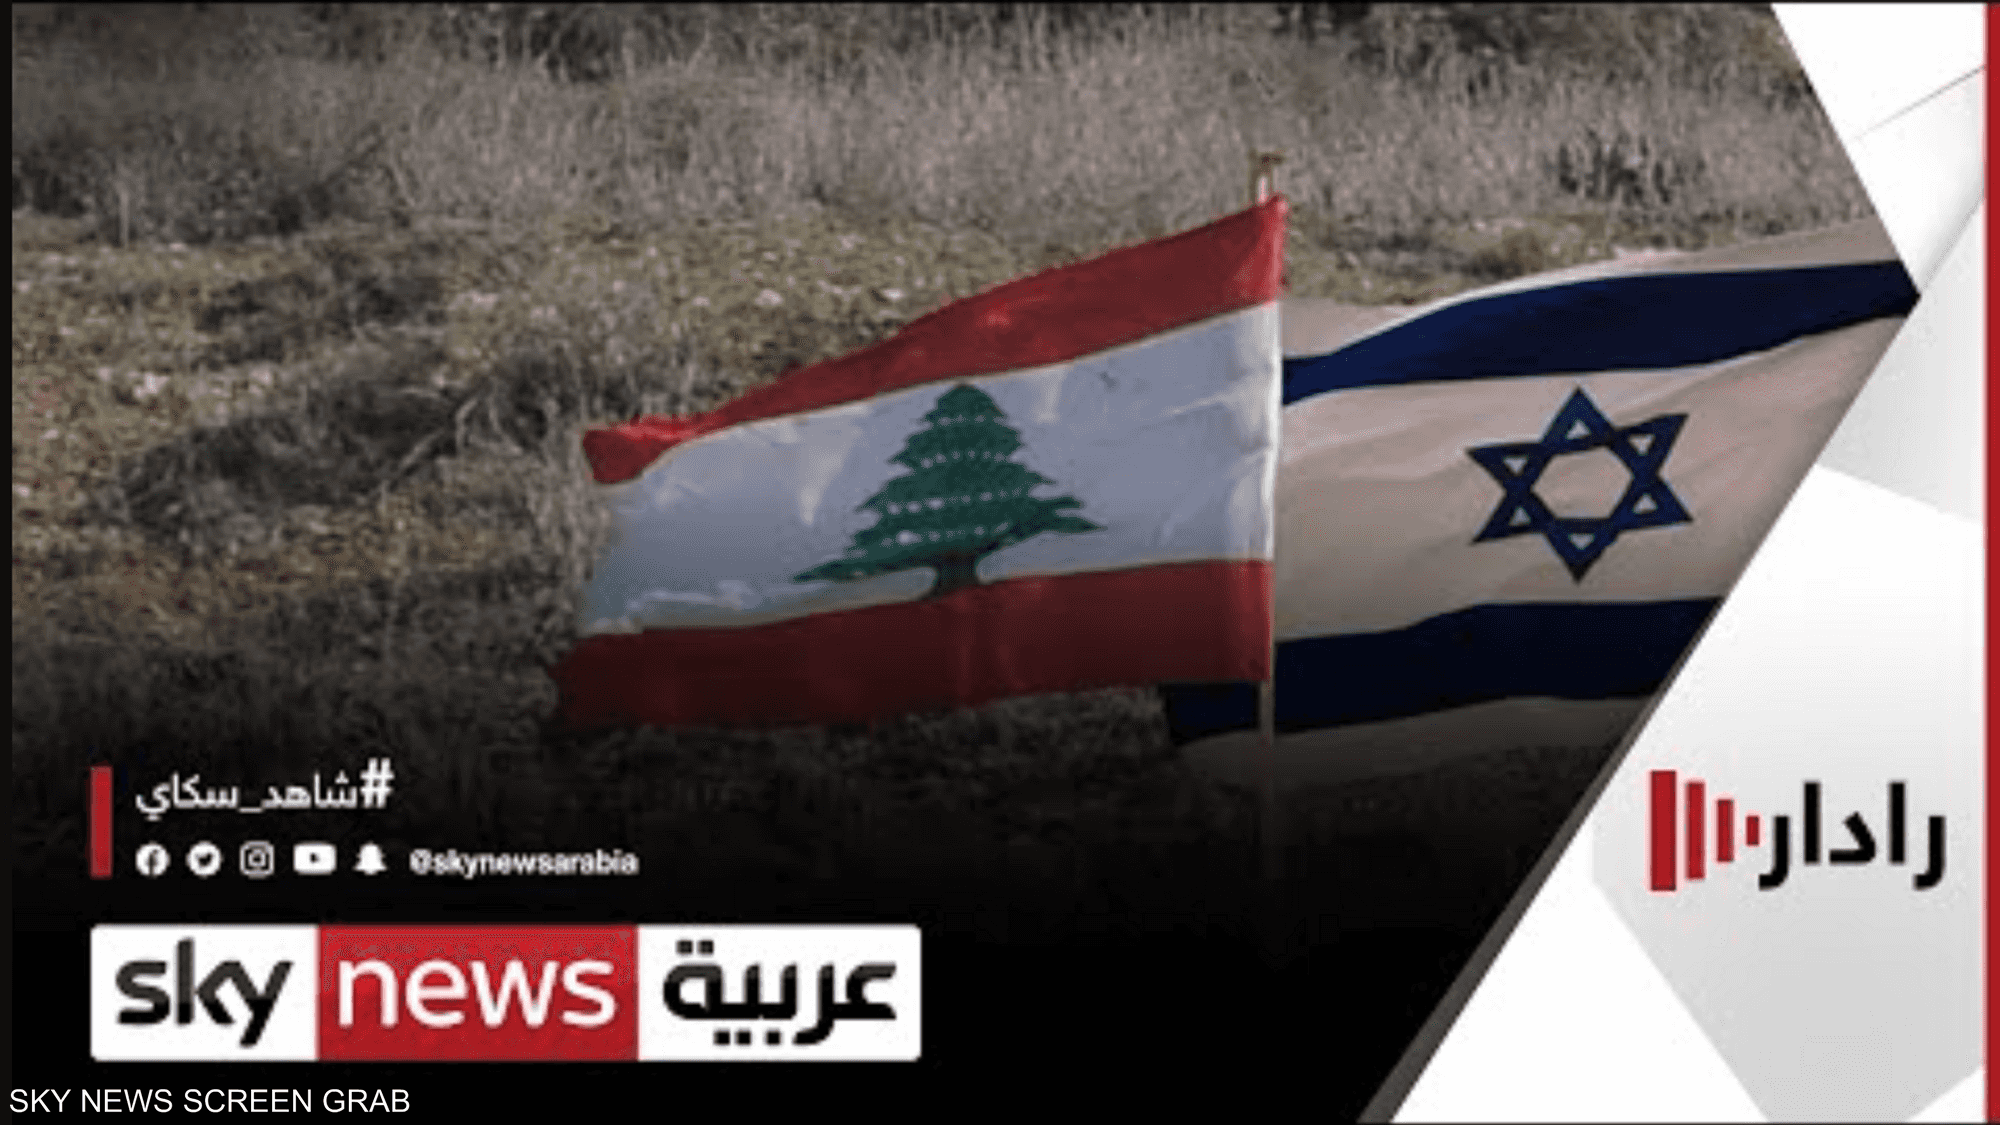 لبنان وإسرائيل رفعا من سقف مطالبهما في محادثات الحدود